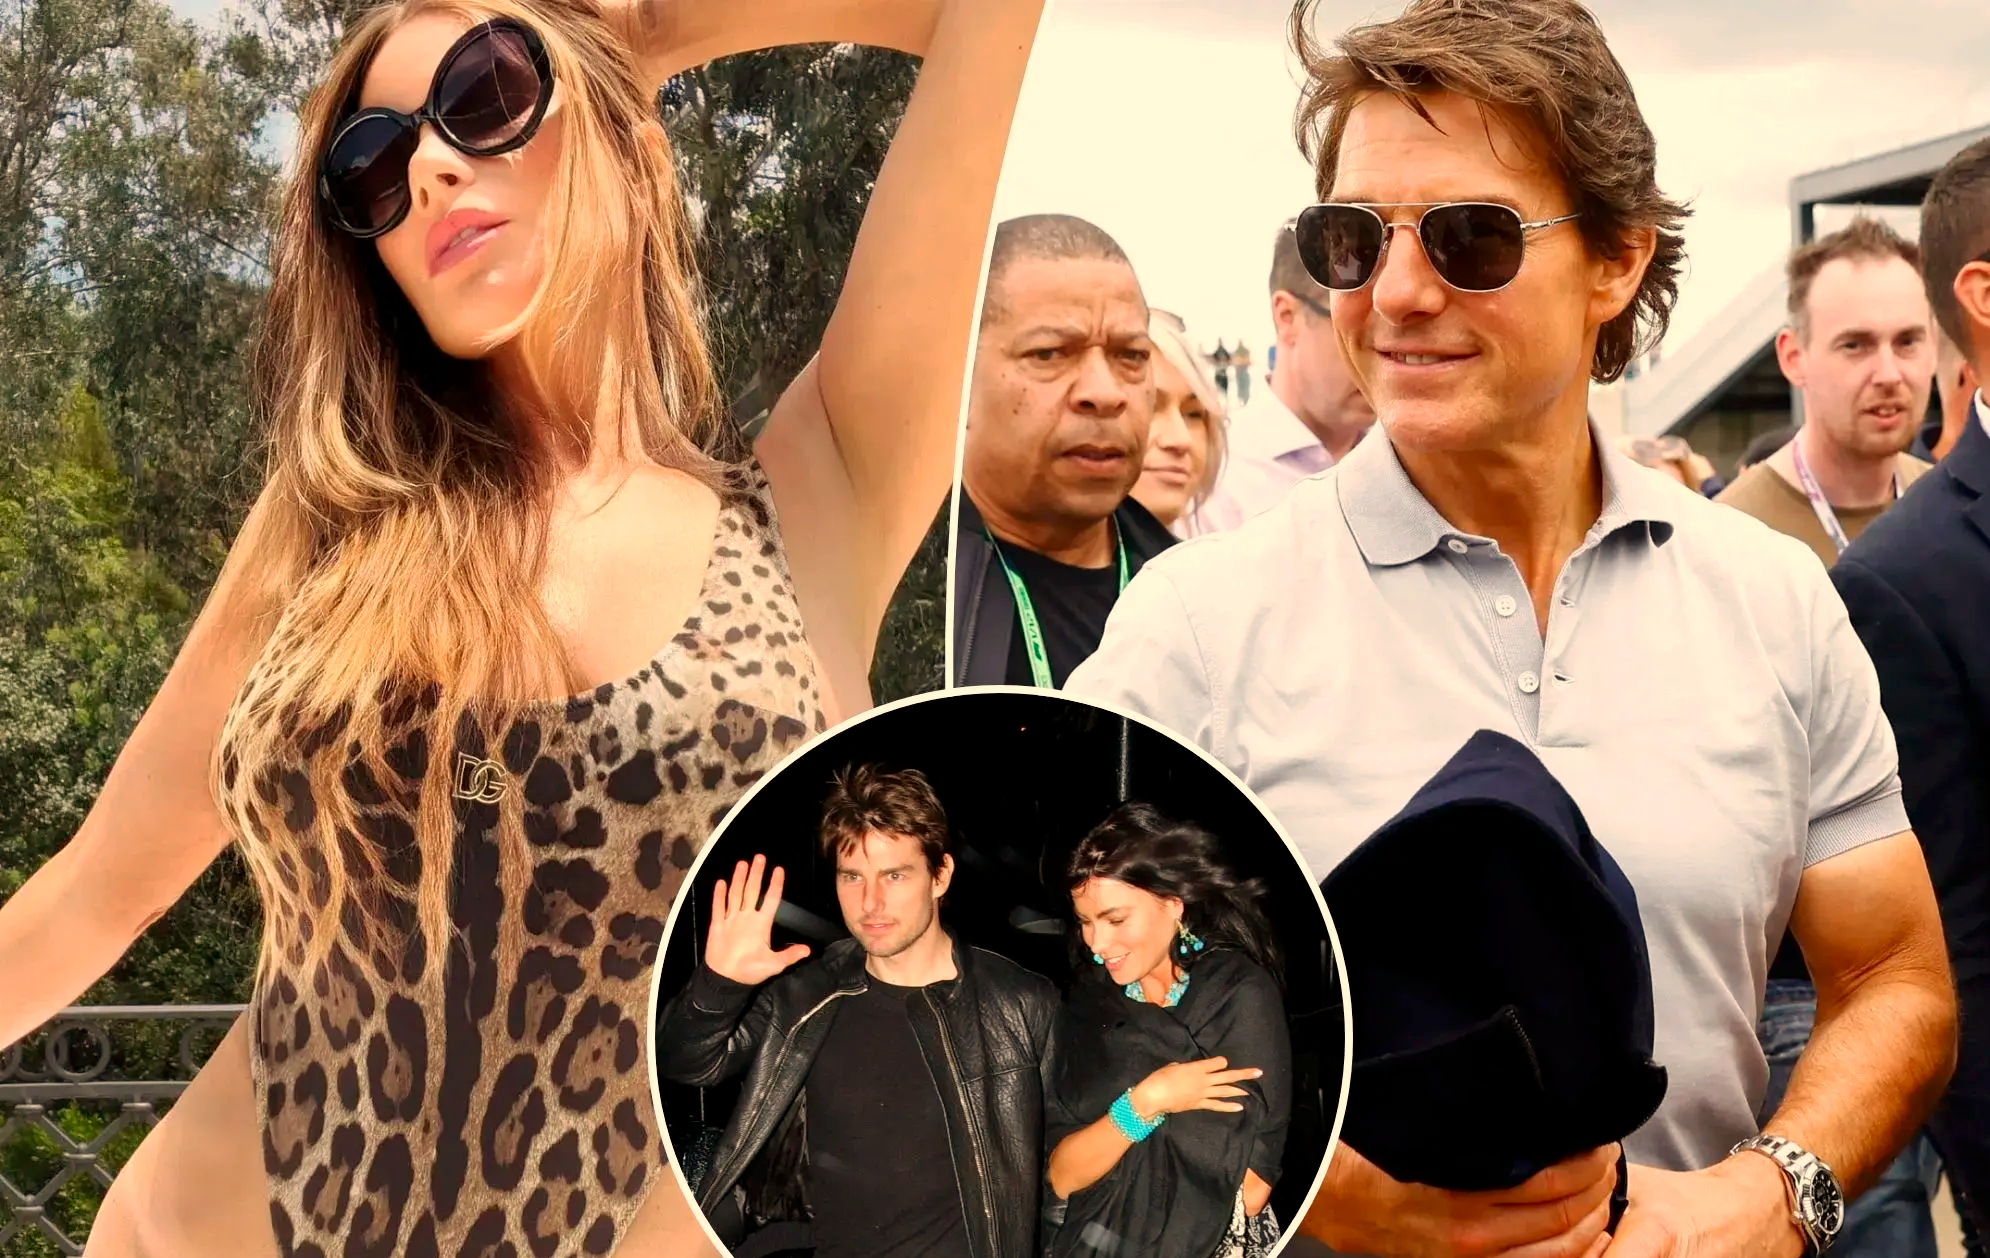 Revista aponta que Tom Cruise deseja reacender romance com Sofia Vergara  20 anos após eles viverem affair - HIT SITE